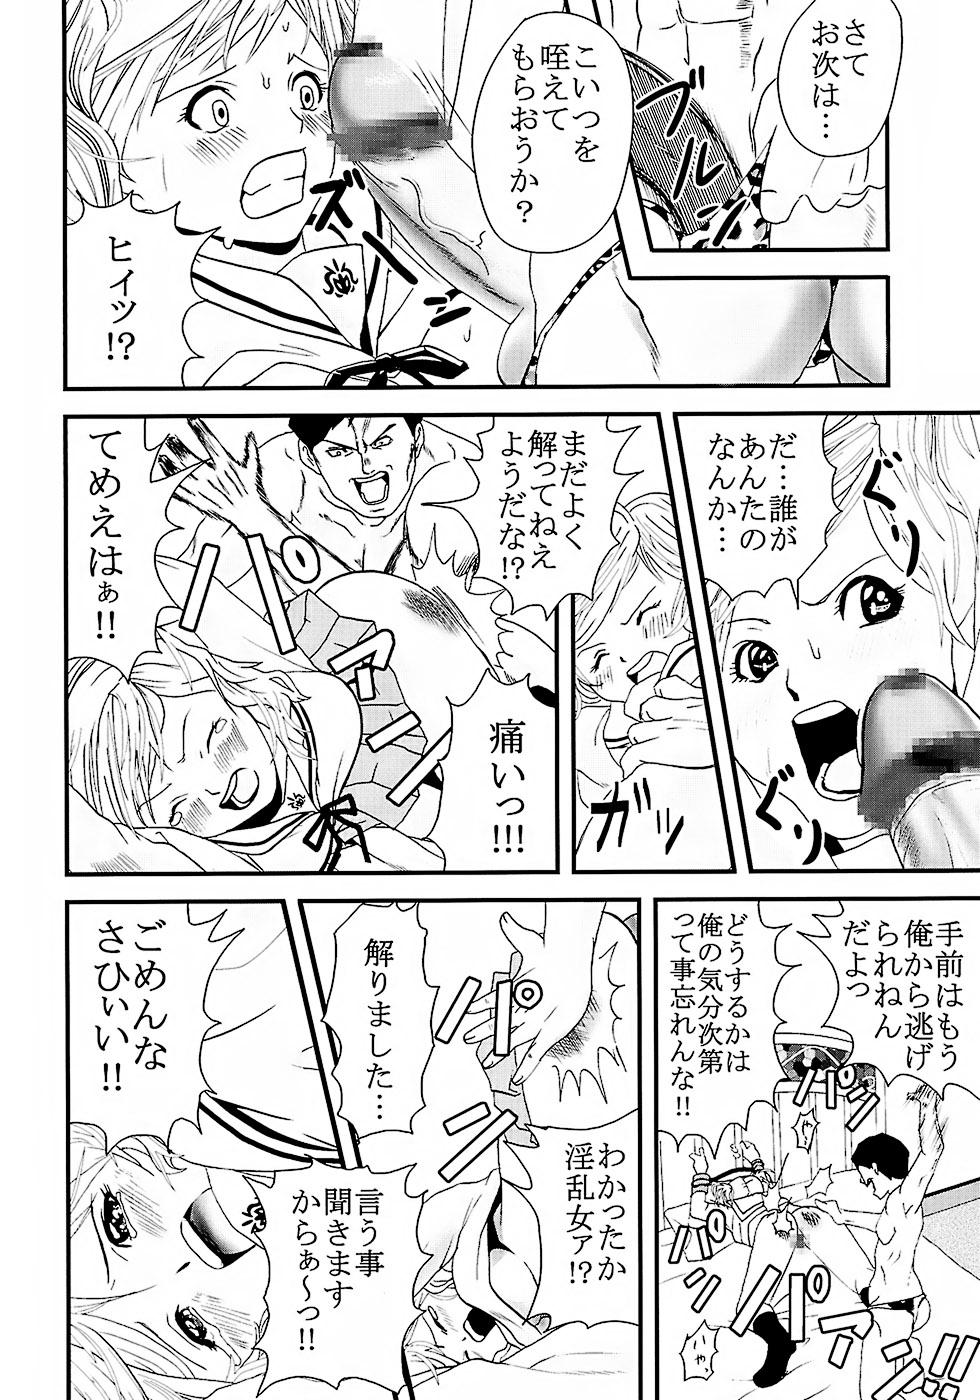 Dicks Chitsui Gentei Nakadashi Limited vol.2 - Hatsukoi limited Gay Bukkakeboy - Page 7